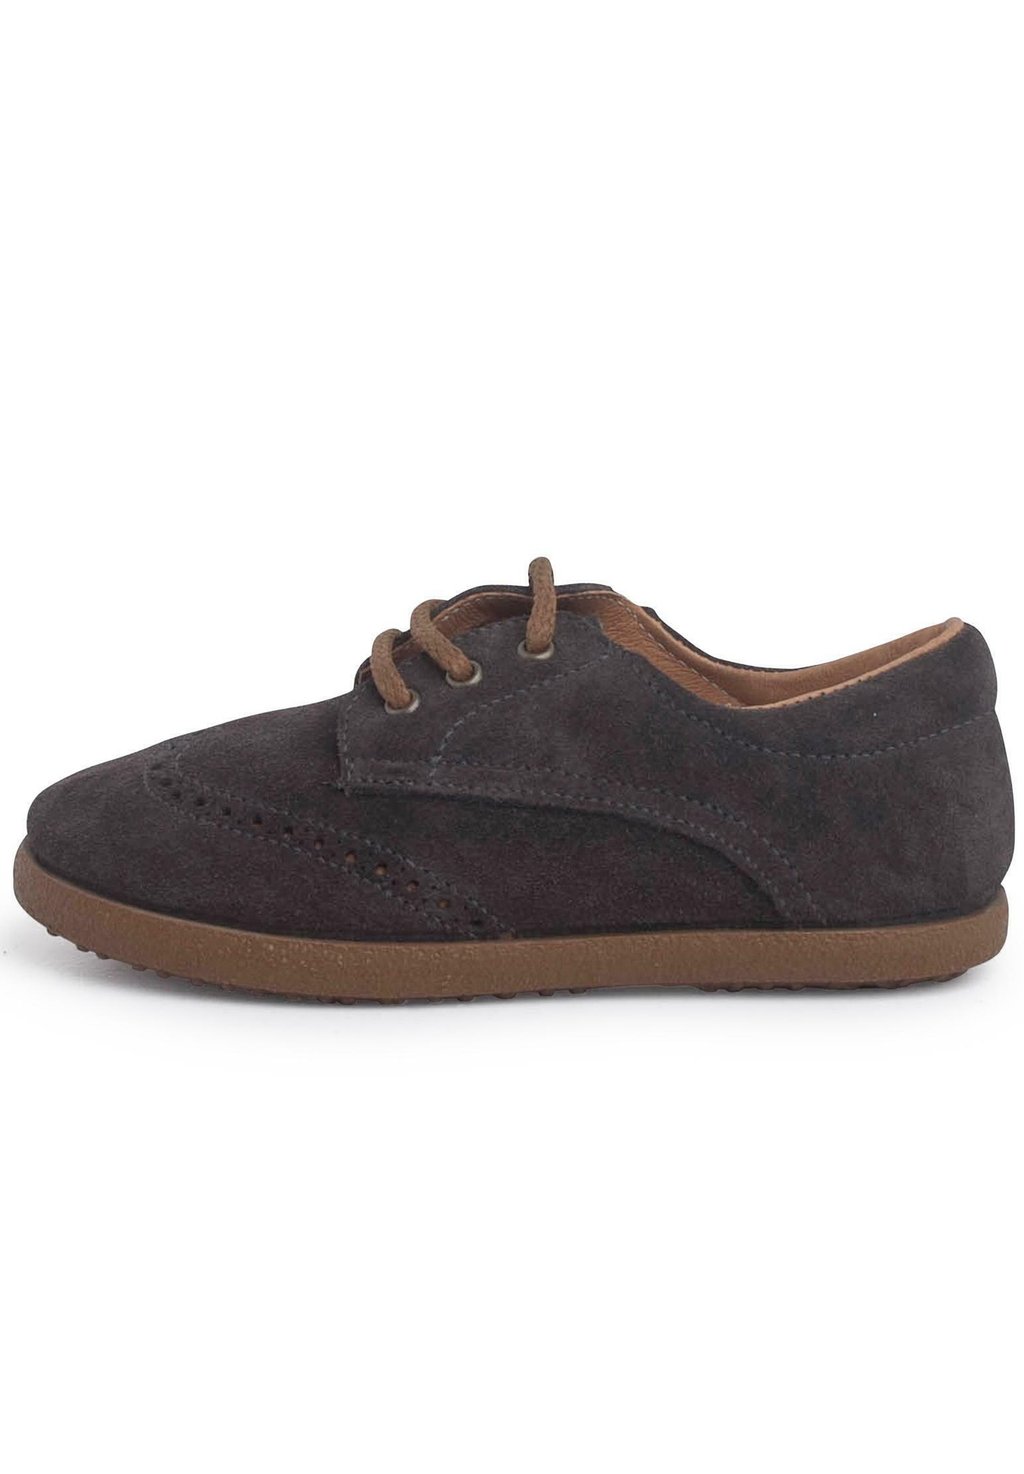 Обувь для обучения OXFORD Pisamonas, цвет gris oscuro низкие кроссовки sin cordones pisamonas цвет gris oscuro